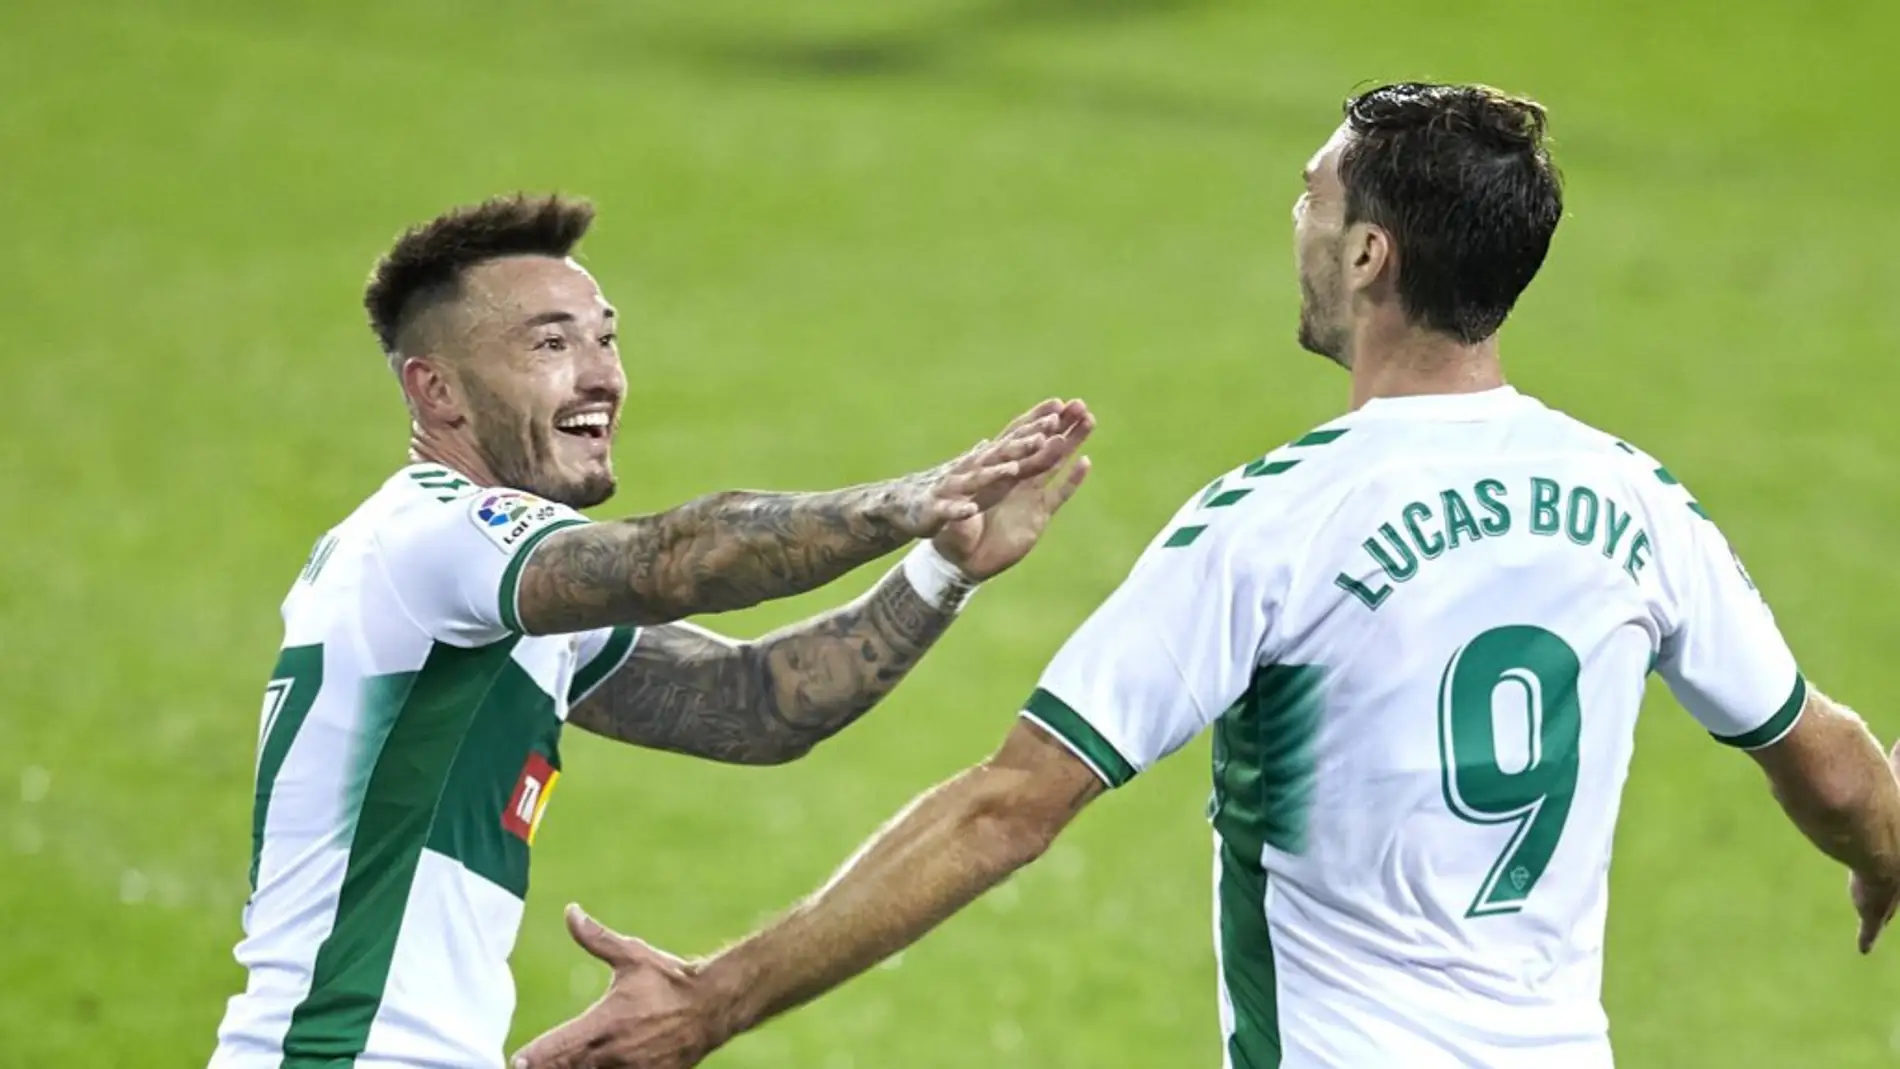 Josan Ferrández y Lucas Boyé celebran el primer gol de la temporada del Elche CF.